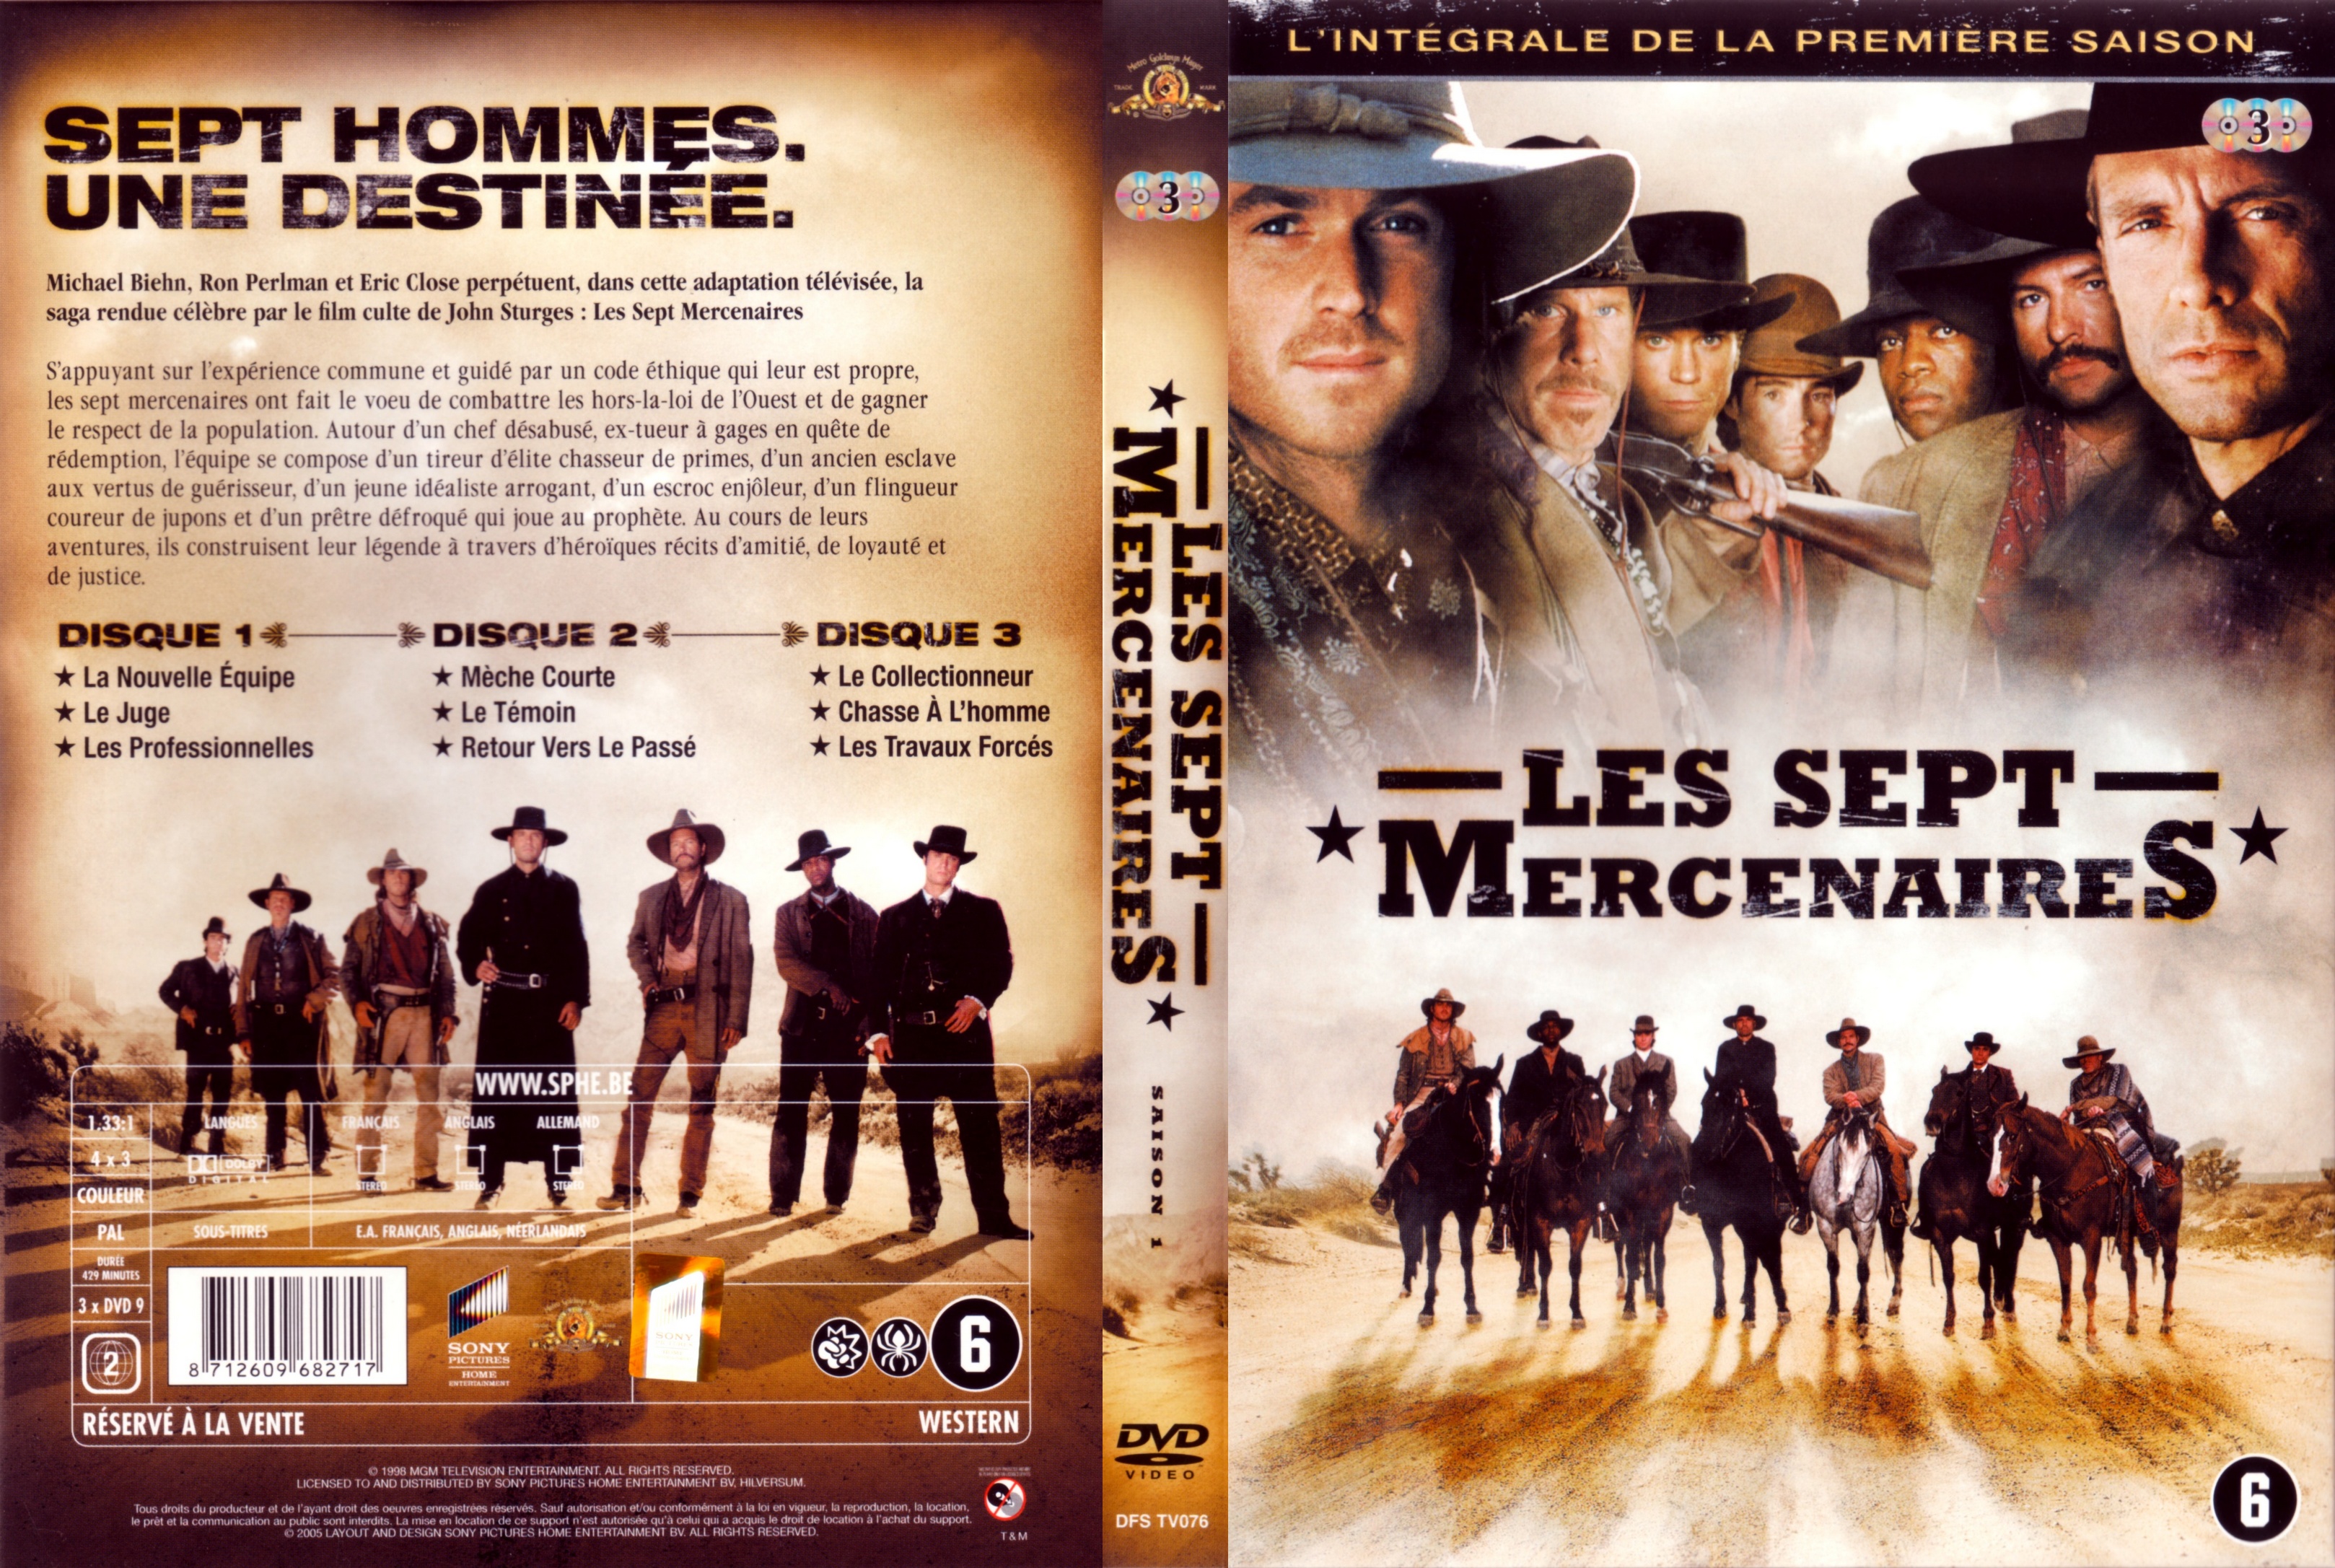 Jaquette DVD Les sept mercenaires Saison 1 COFFRET